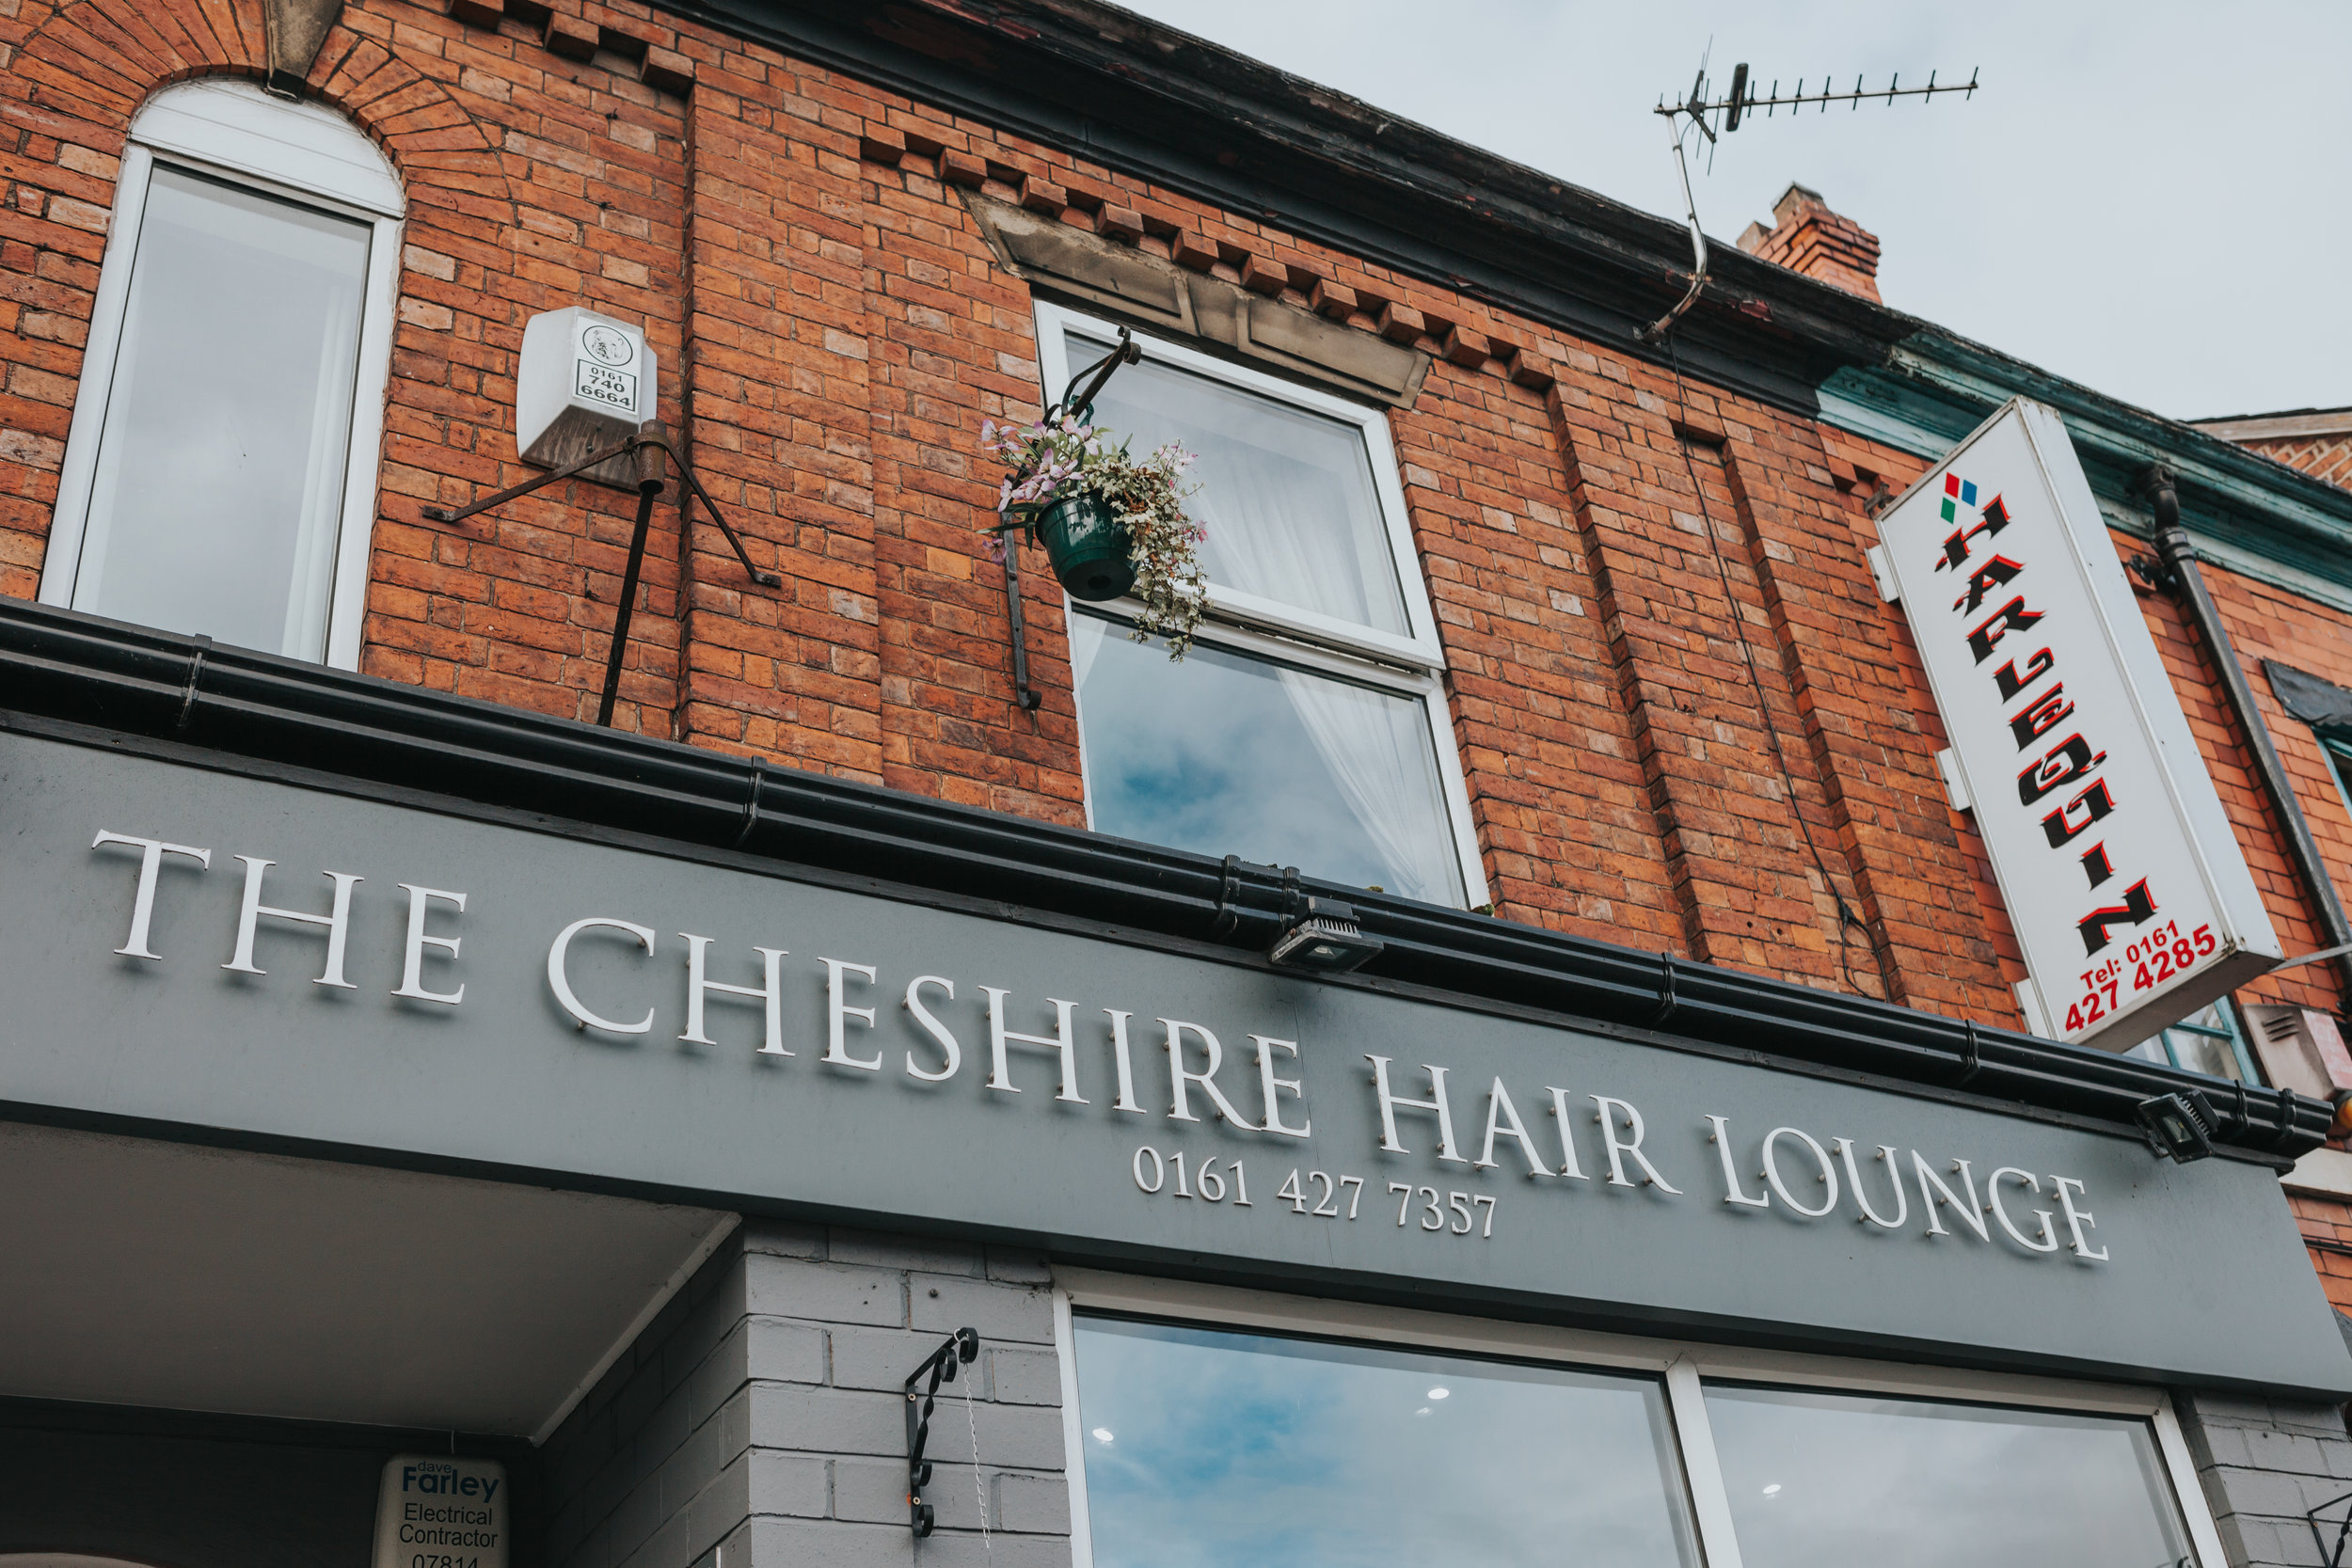  Cheshire Hair Salon&nbsp; 